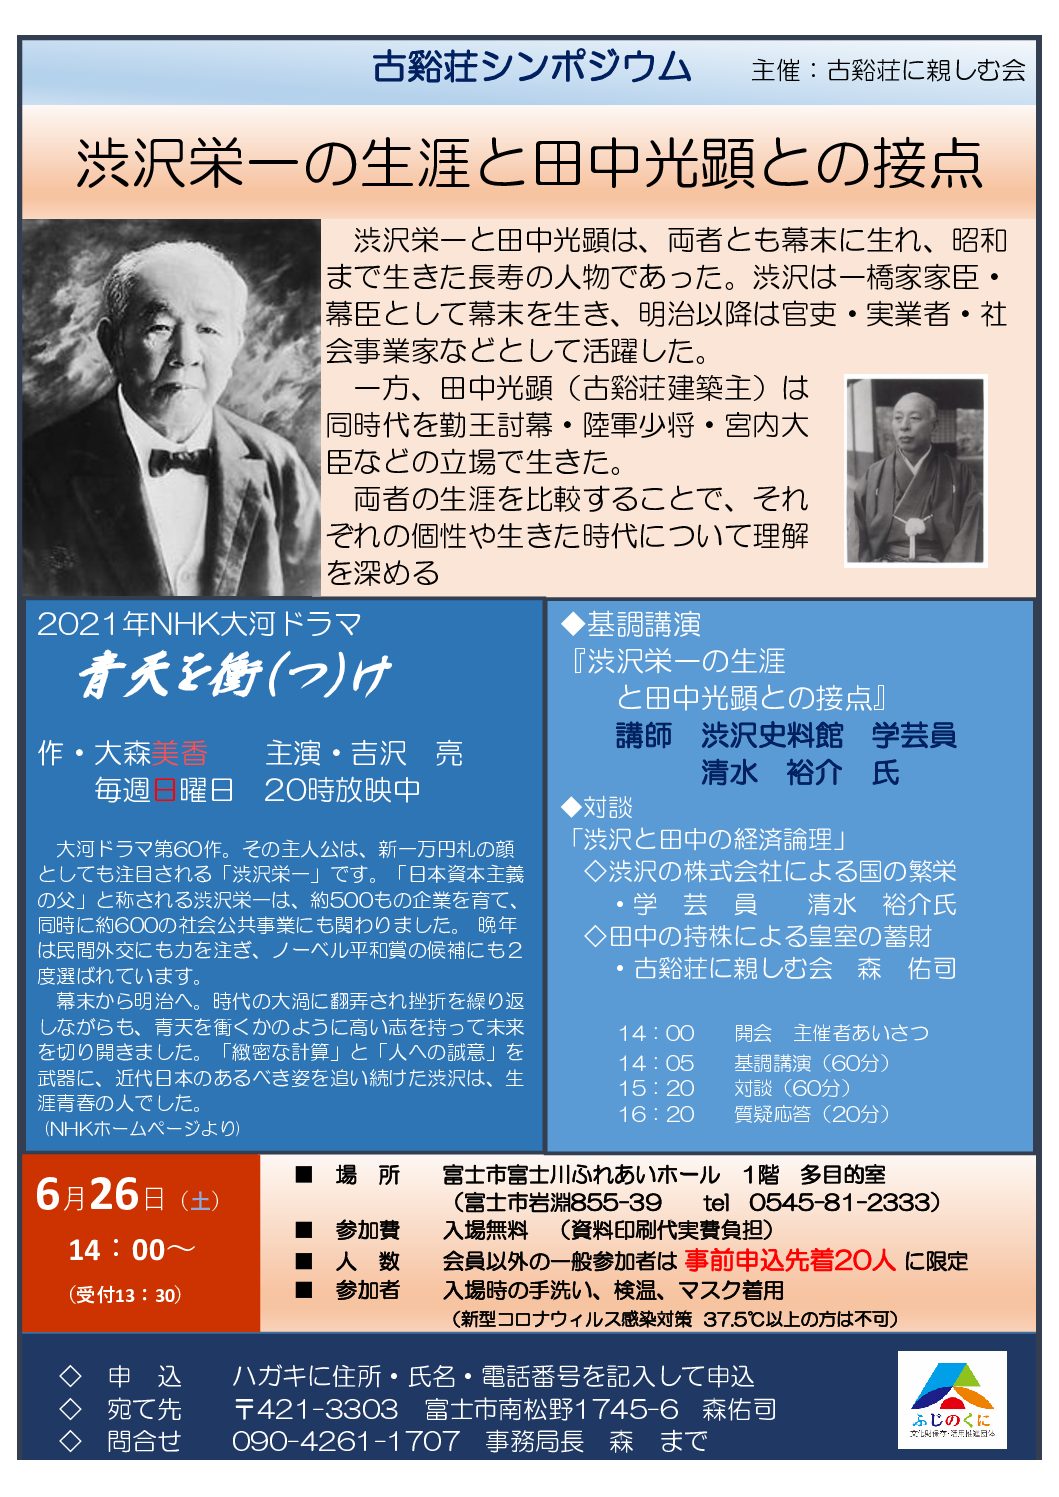 シンポジウム「渋沢栄一の生涯と田中光顕との接点」が開催されました